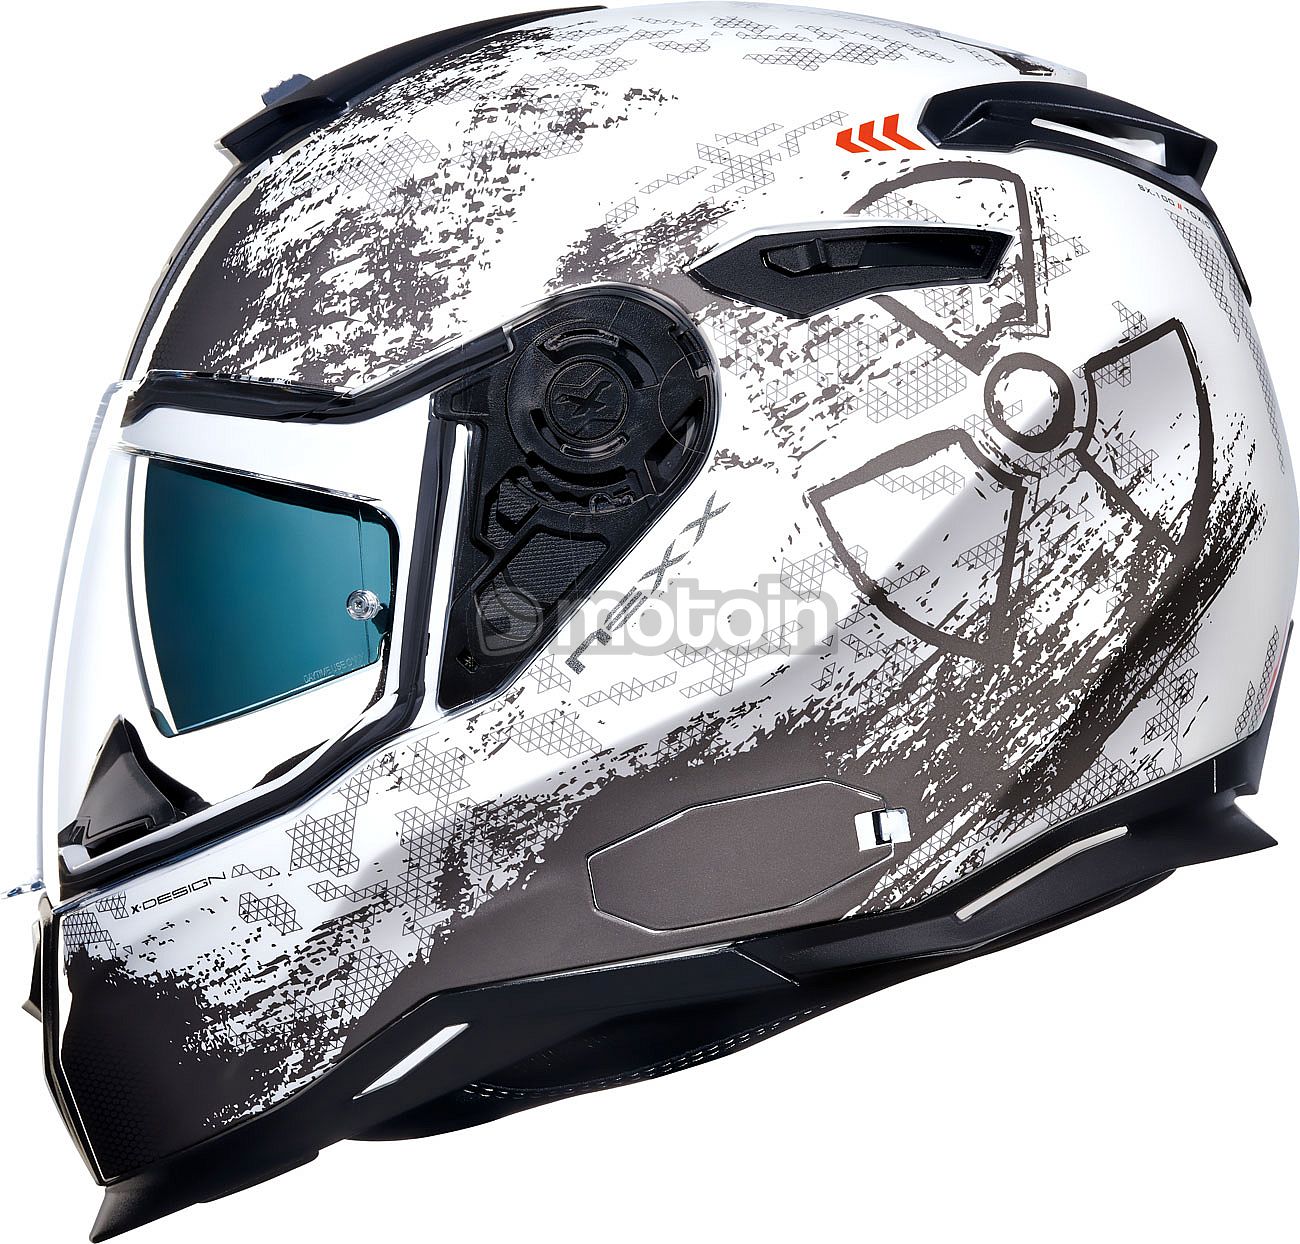 Nexx SX.100 Toxic capacete - melhores preços ▷ FC-Moto